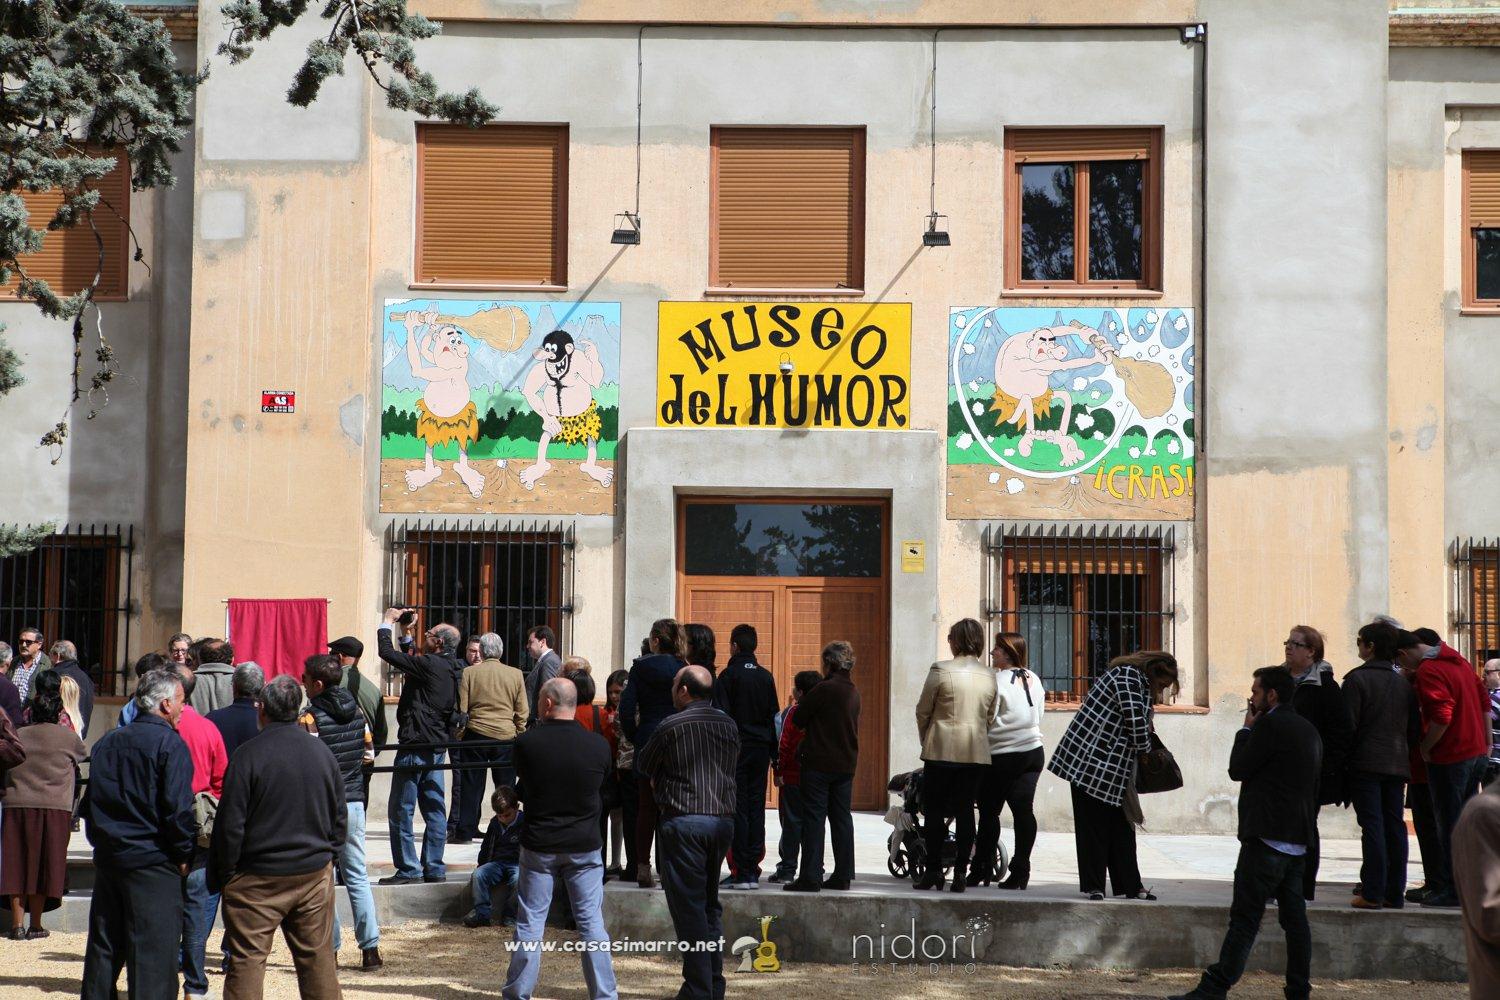 Museo del humor de Casasimarro 3